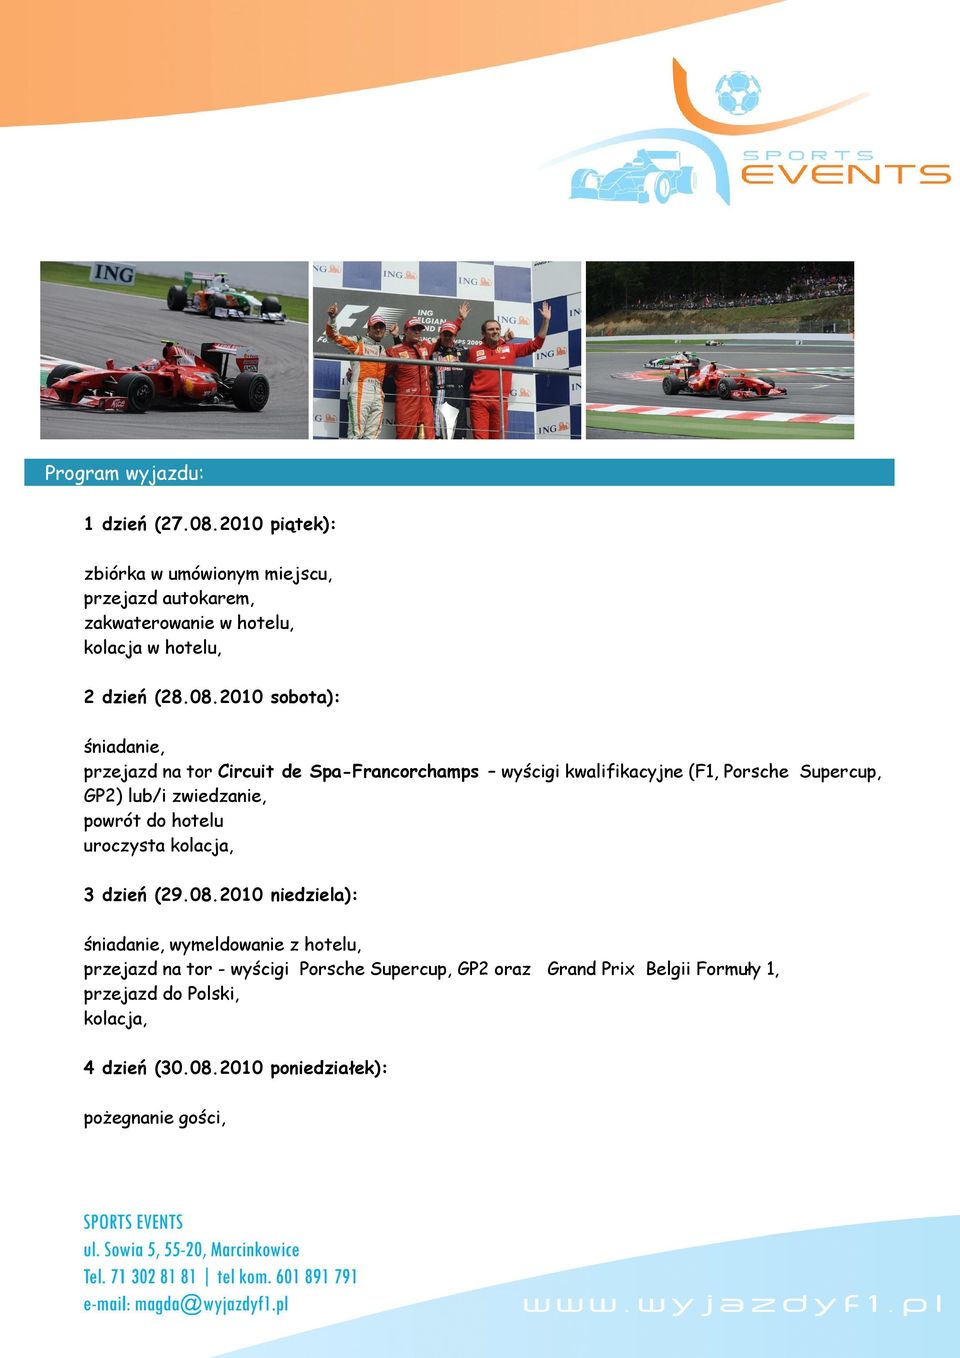 2010 sobota): przejazd na tor Circuit de Spa-Francorchamps wyścigi kwalifikacyjne (F1, Porsche Supercup, GP2) lub/i zwiedzanie,